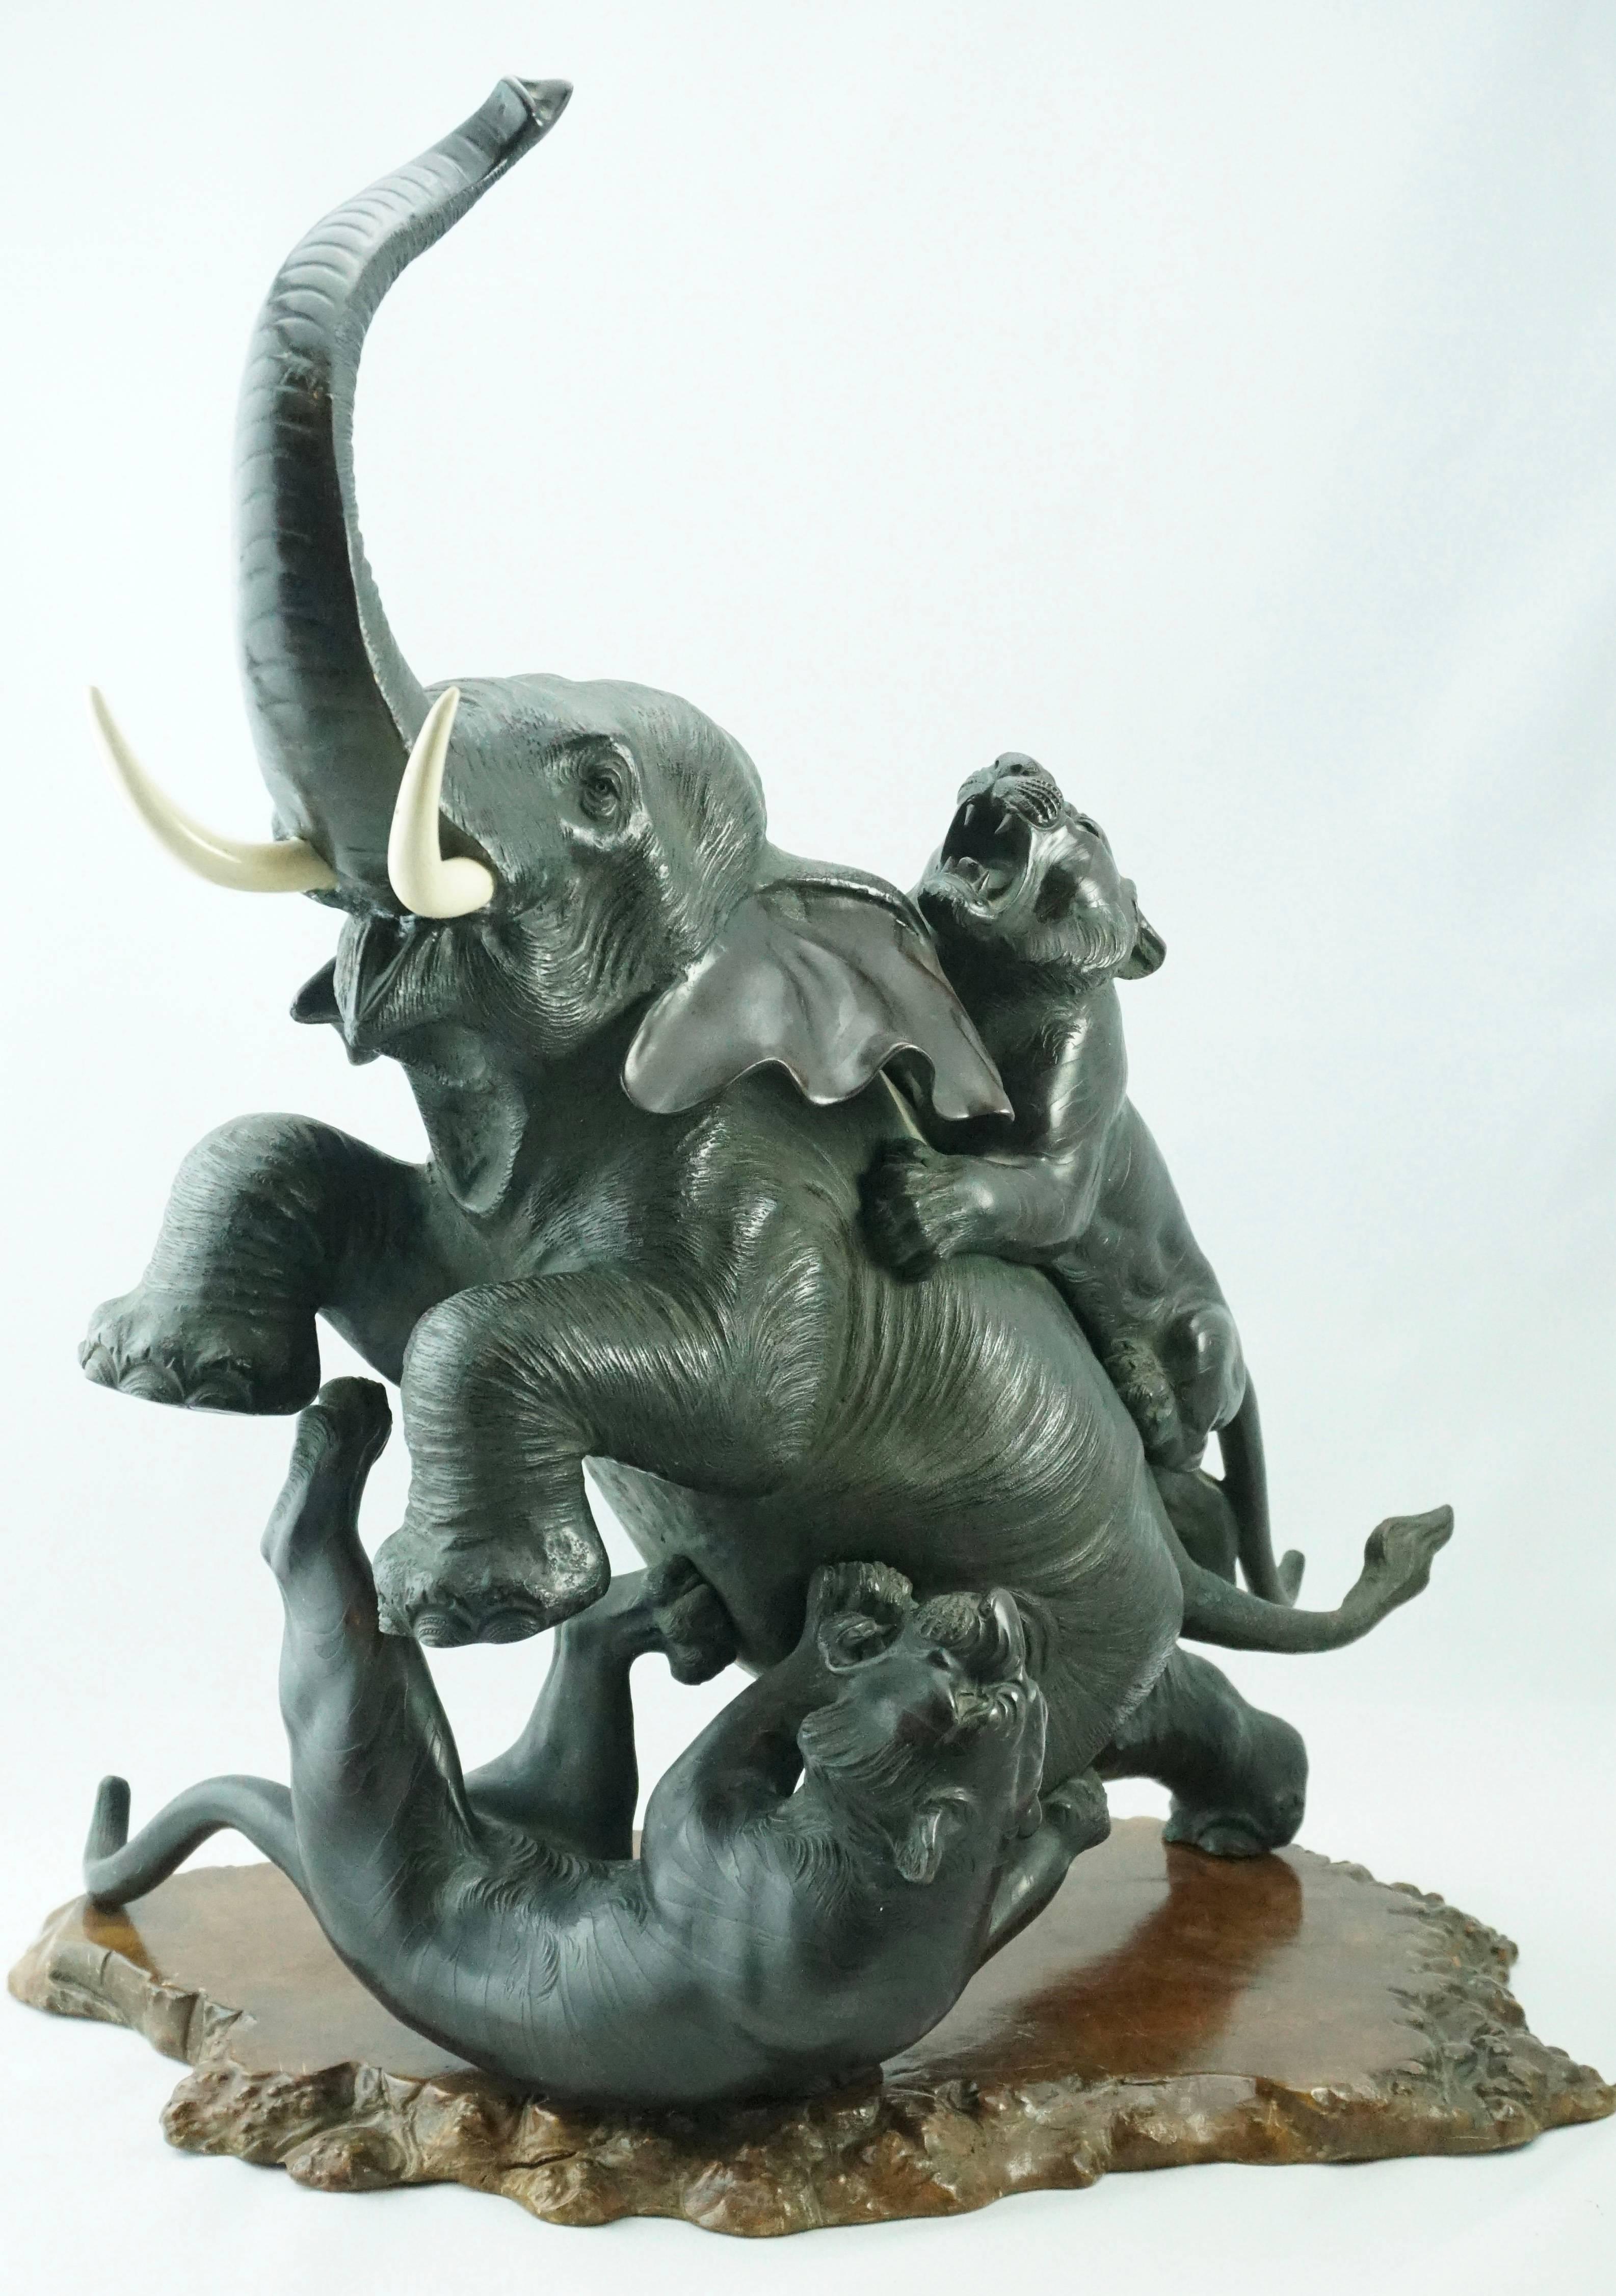 Éléphant et tigres japonais Meiji Genryusai Seiya en bronze, vers 1890.

Ce groupe de bronze émouvant et détaillé représente une attaque sauvage de deux tigres visqueux sur un éléphant mâle d'Asie qui refuse de se rendre sans se battre. La ciselure